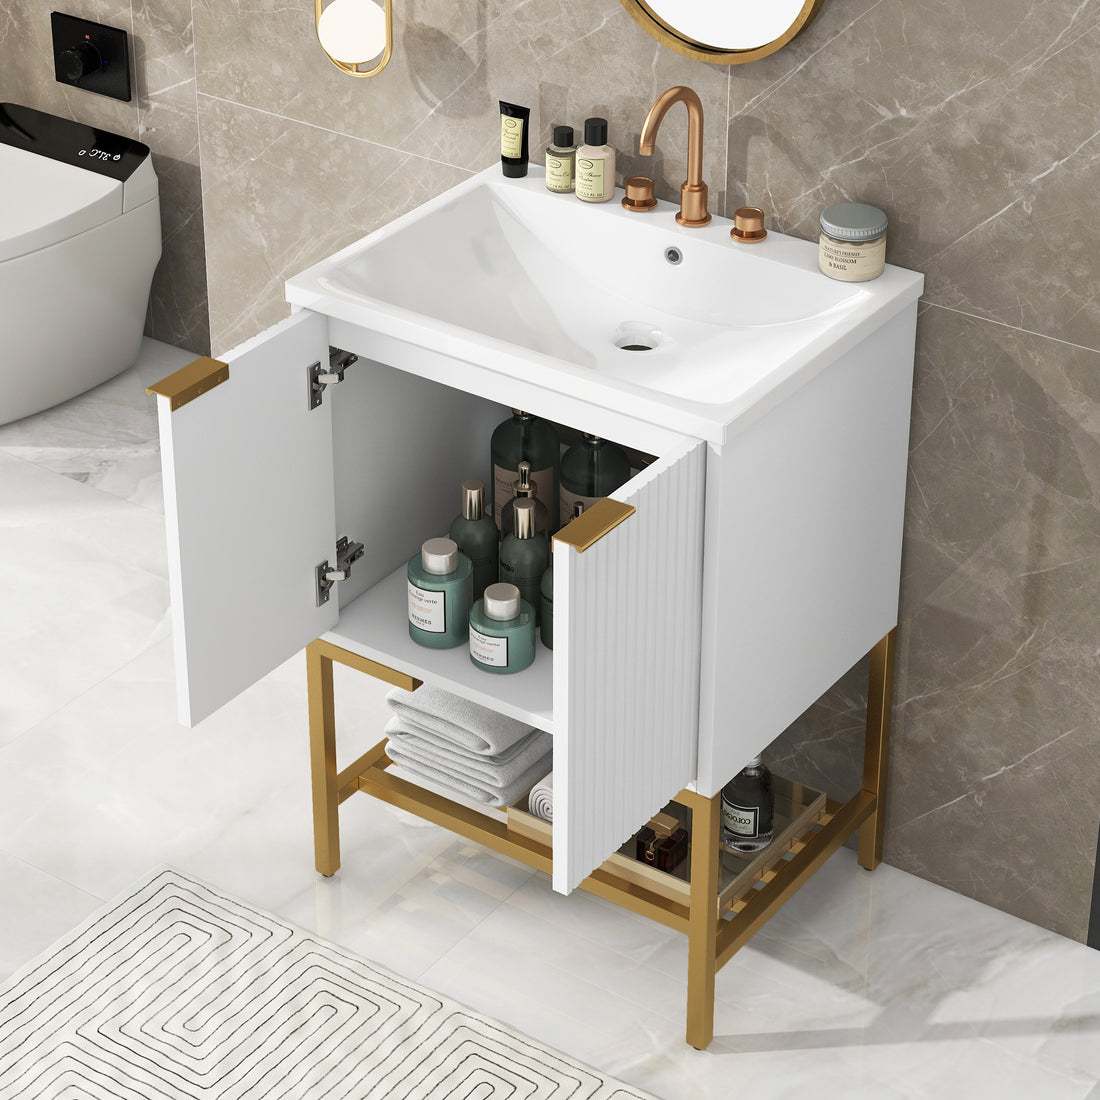 24" Bathroom Vanity with Sink, Bathroom Vanity Cabinet white-solid wood+mdf